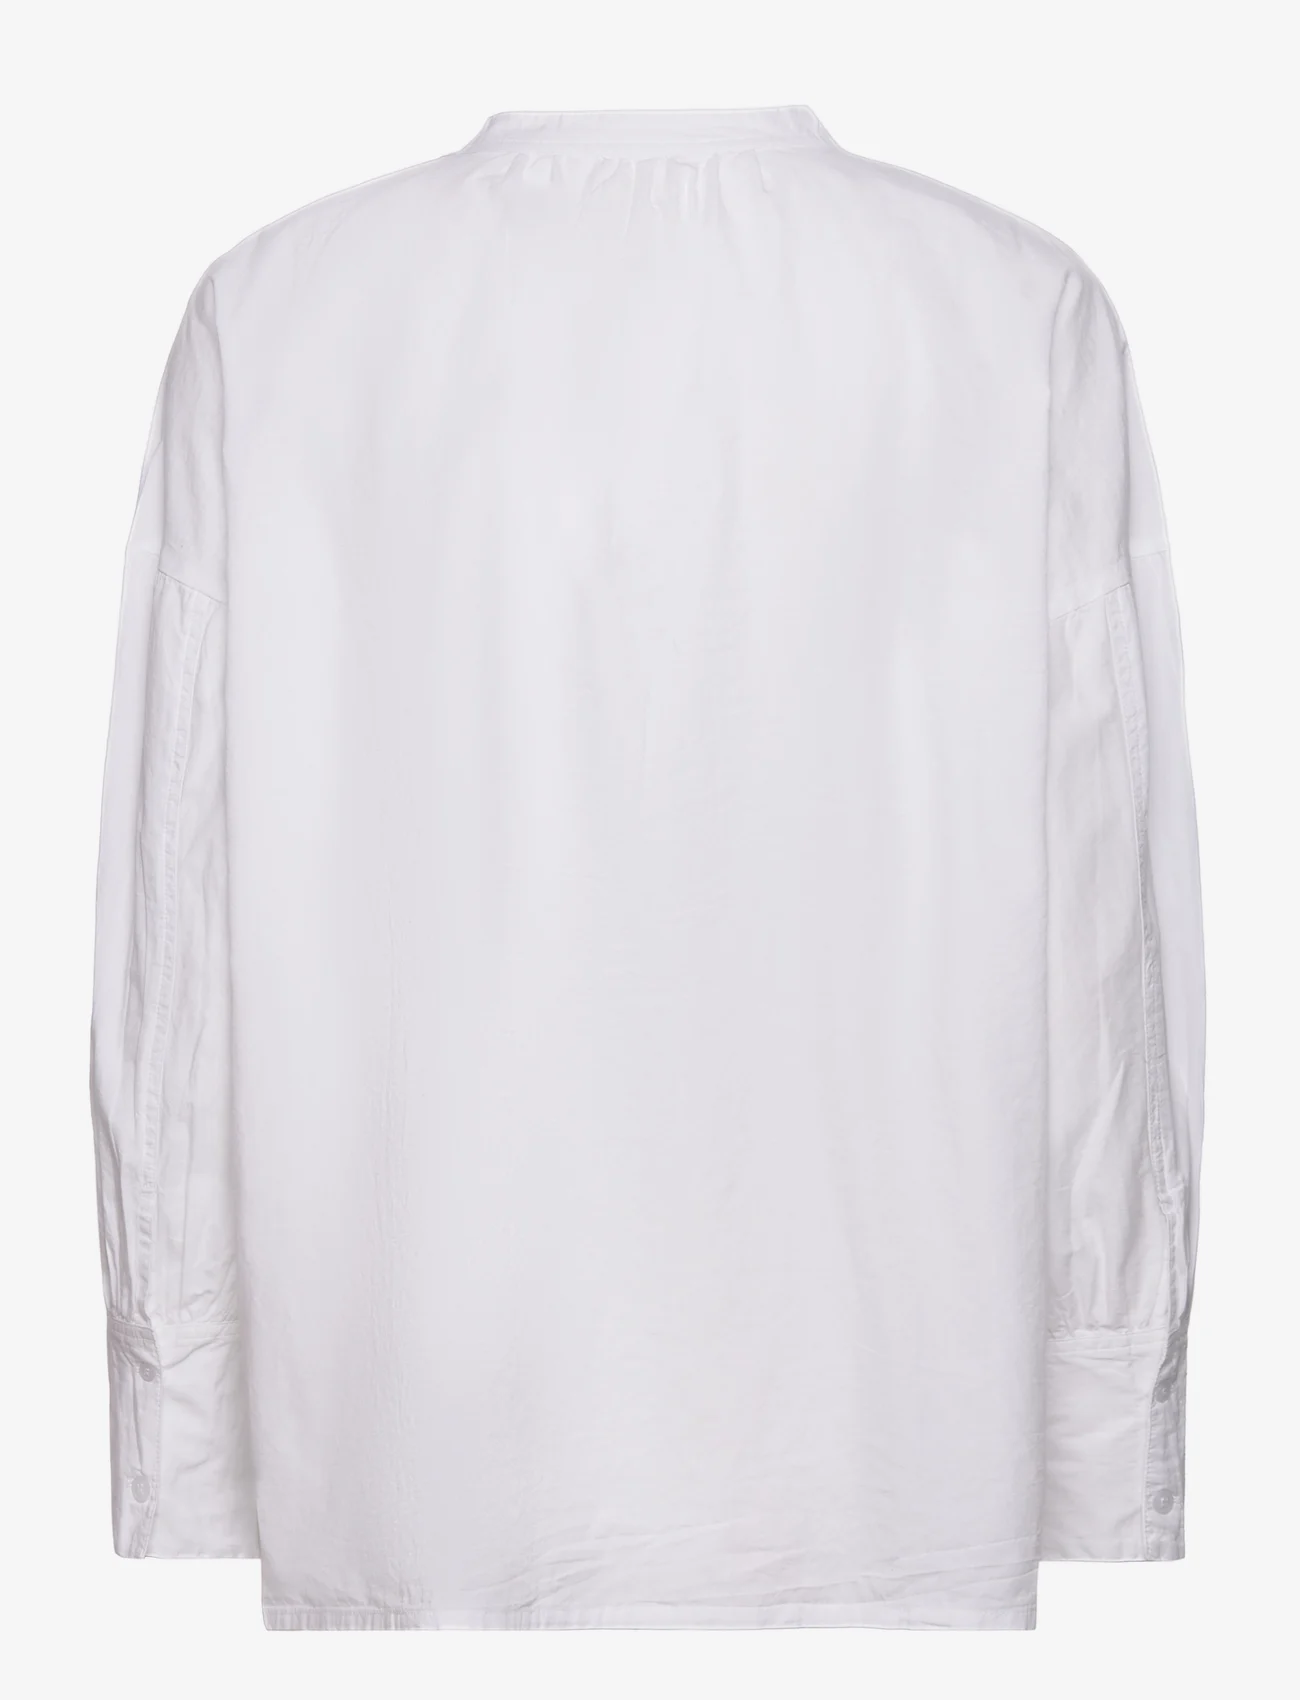 Moshi Moshi Mind - light shirt poplin - pitkähihaiset paidat - white - 1